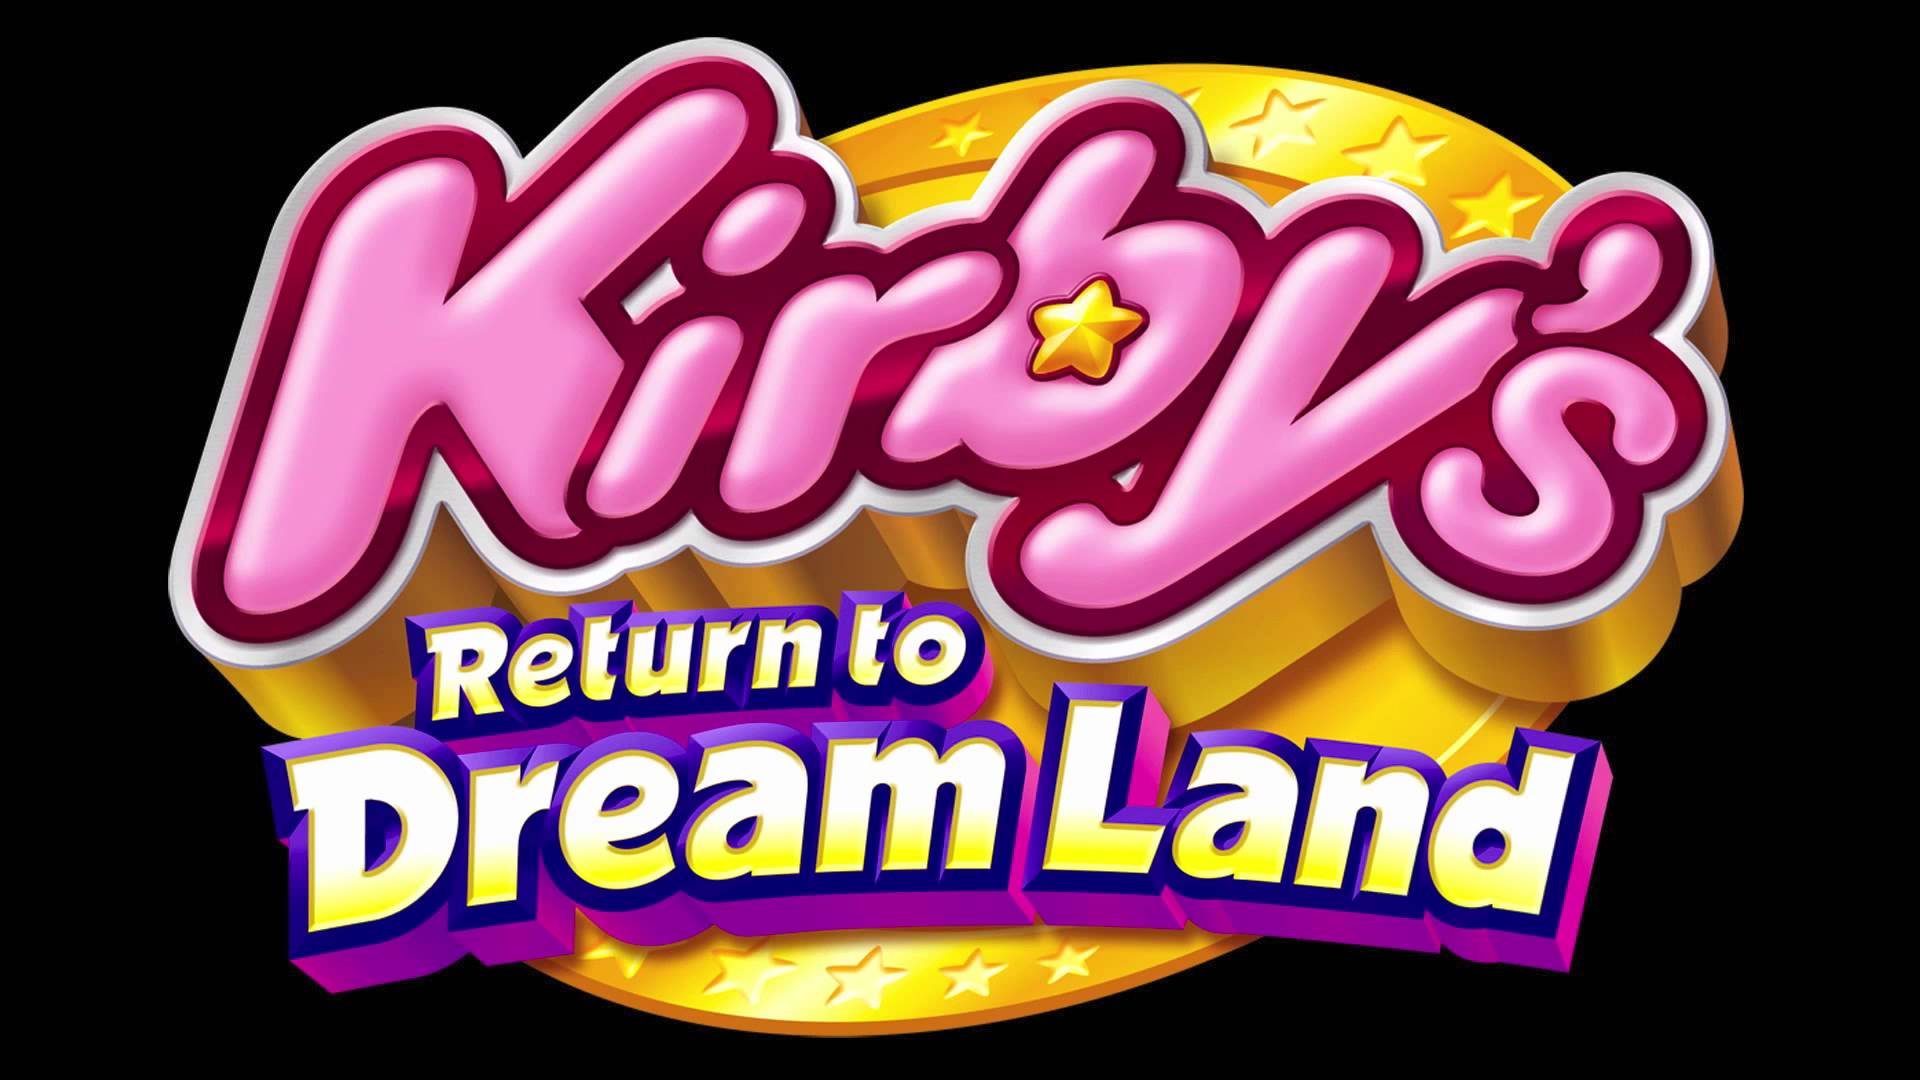 C-R-O-W-N-E-D - Kirby's Return to Dream Land - YouTube